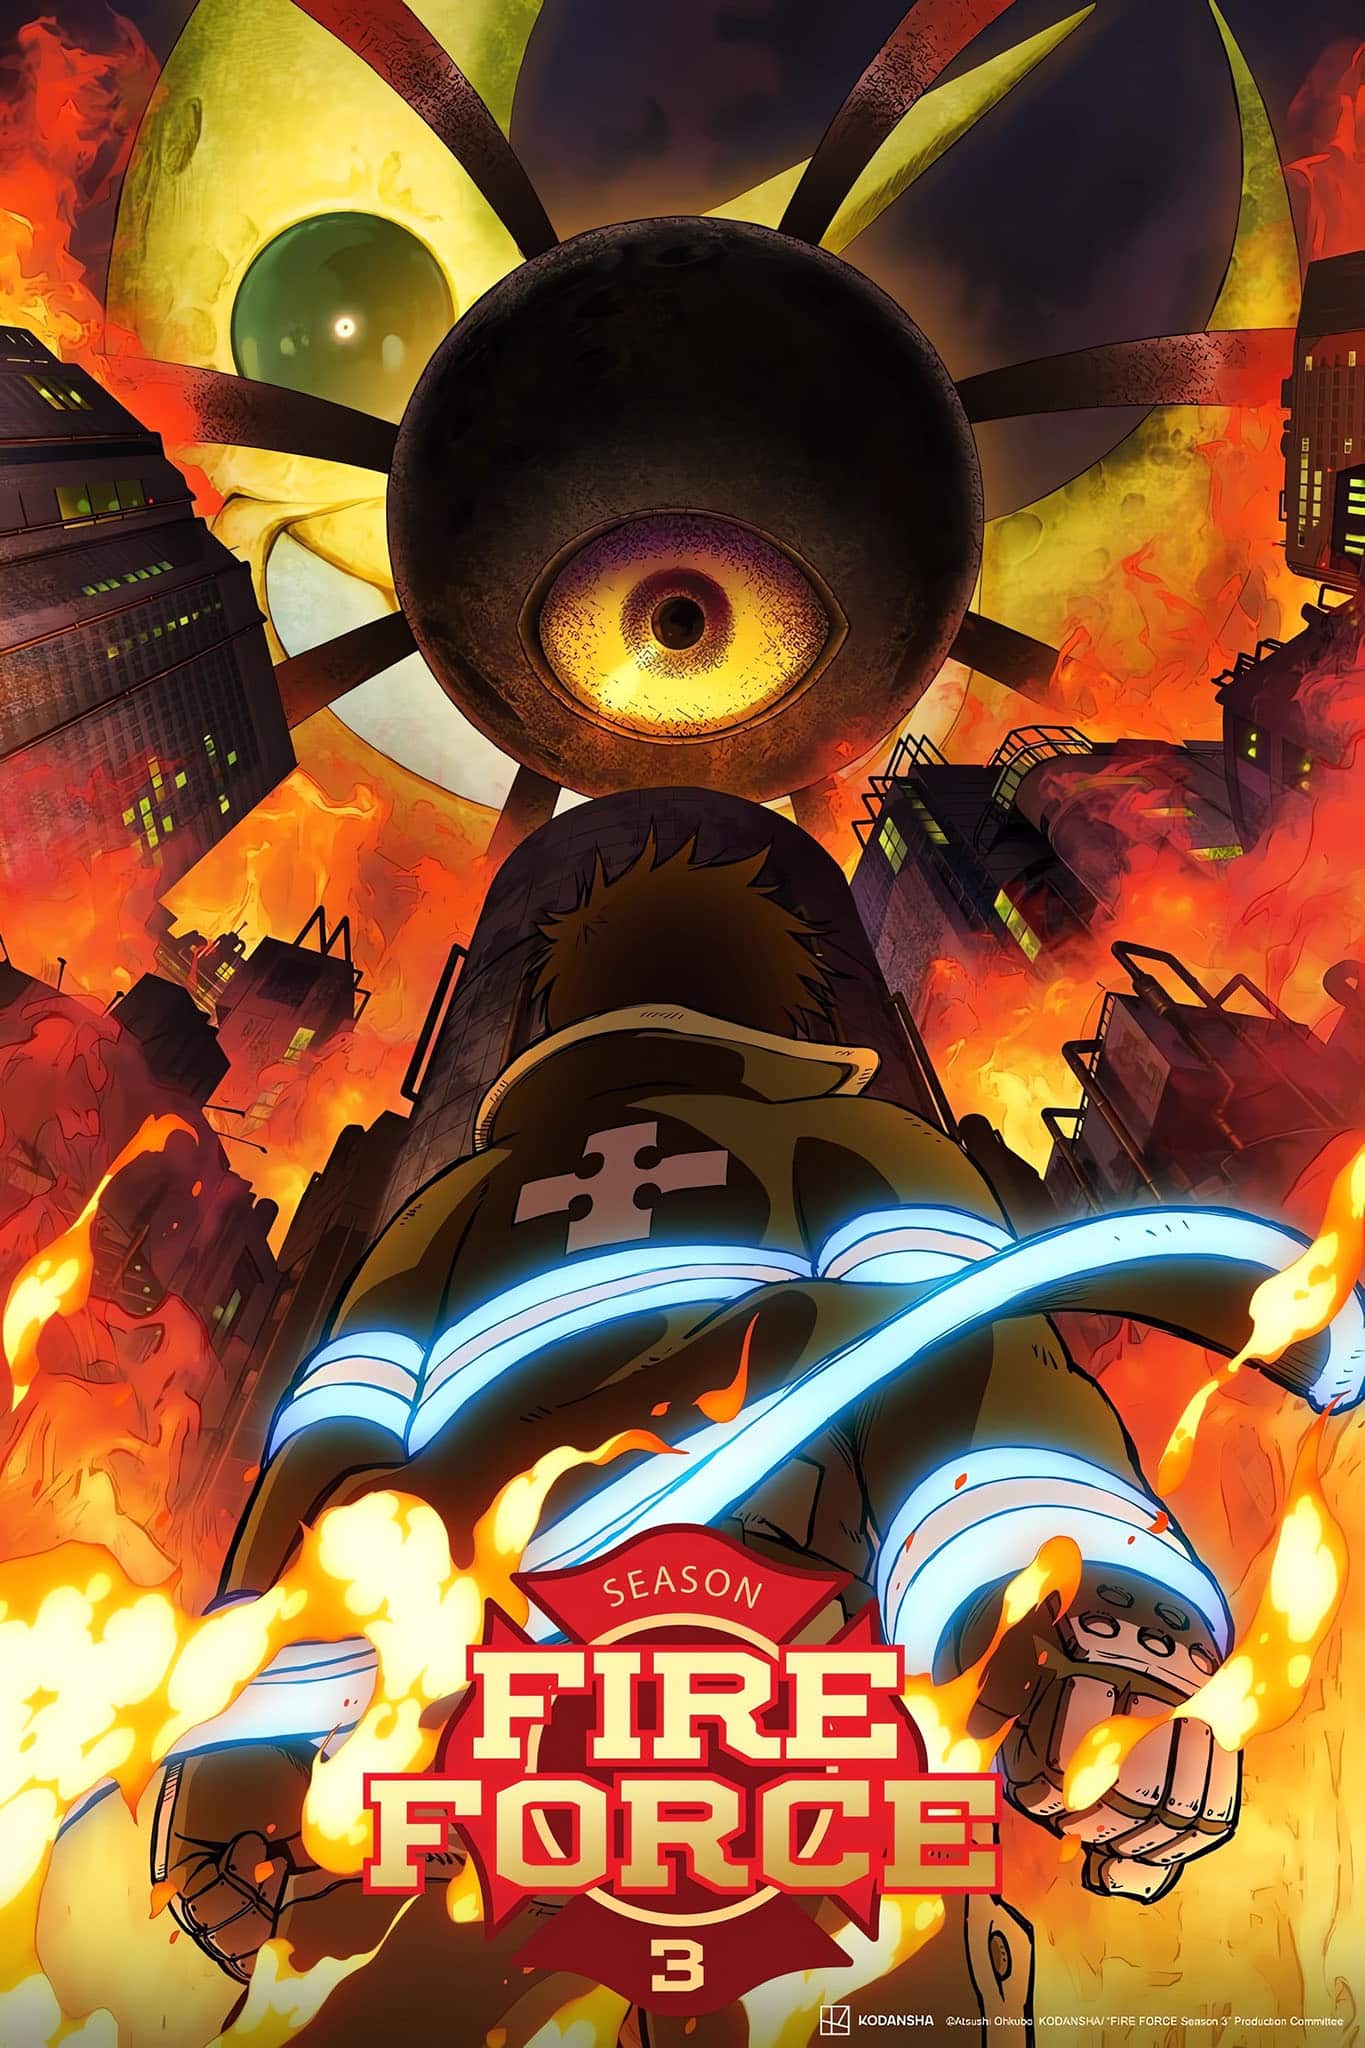 Premier visuel pour la saison 3 de l'anime Fire Force.